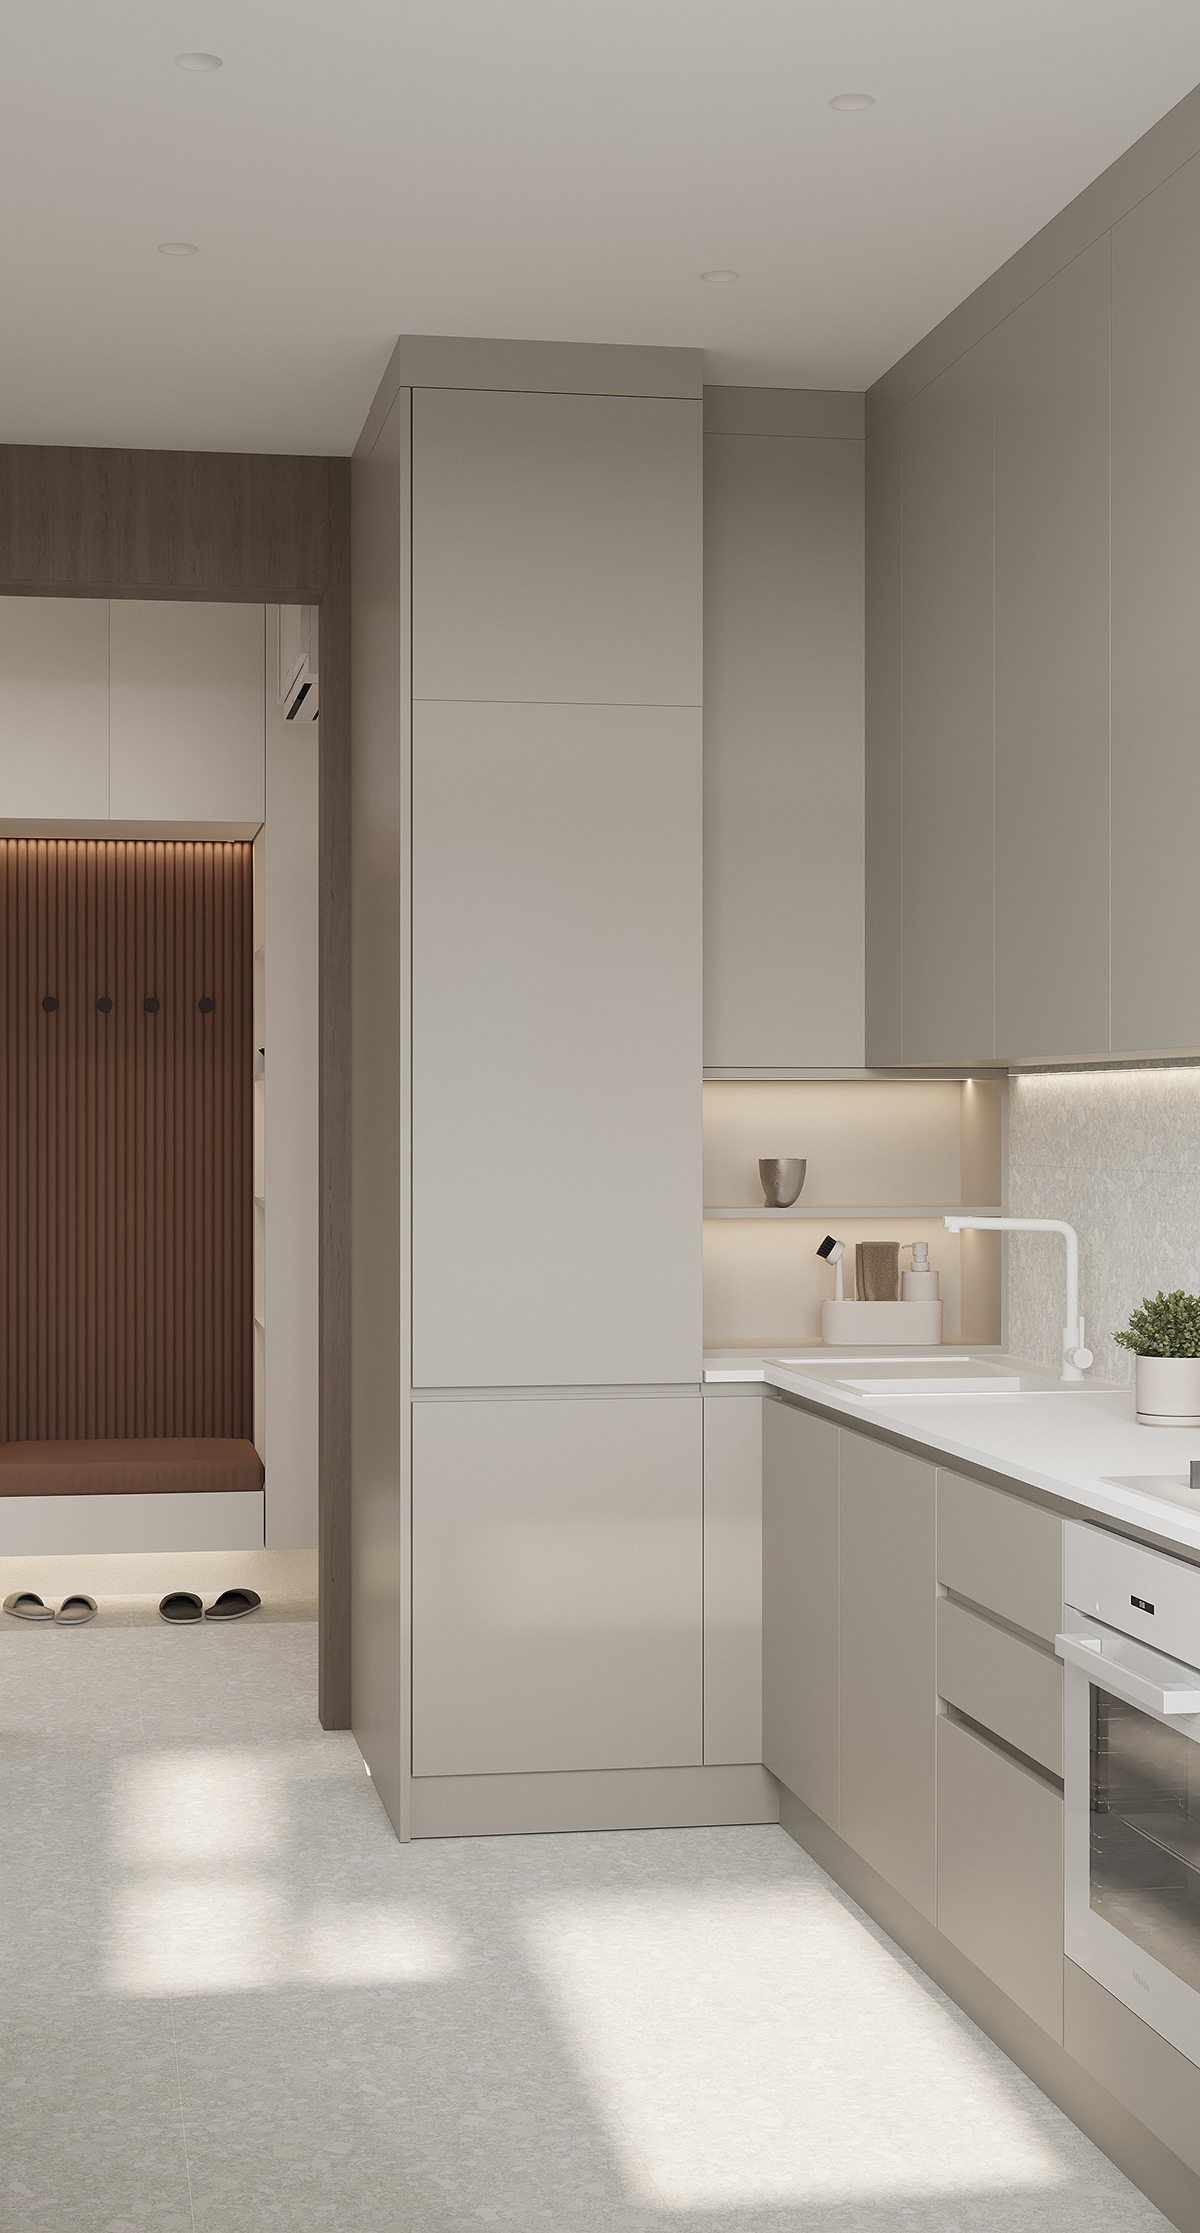 гостиная   спальня дизайн интерьера interior design  visualization designer interiordesign кухня living room kitchen